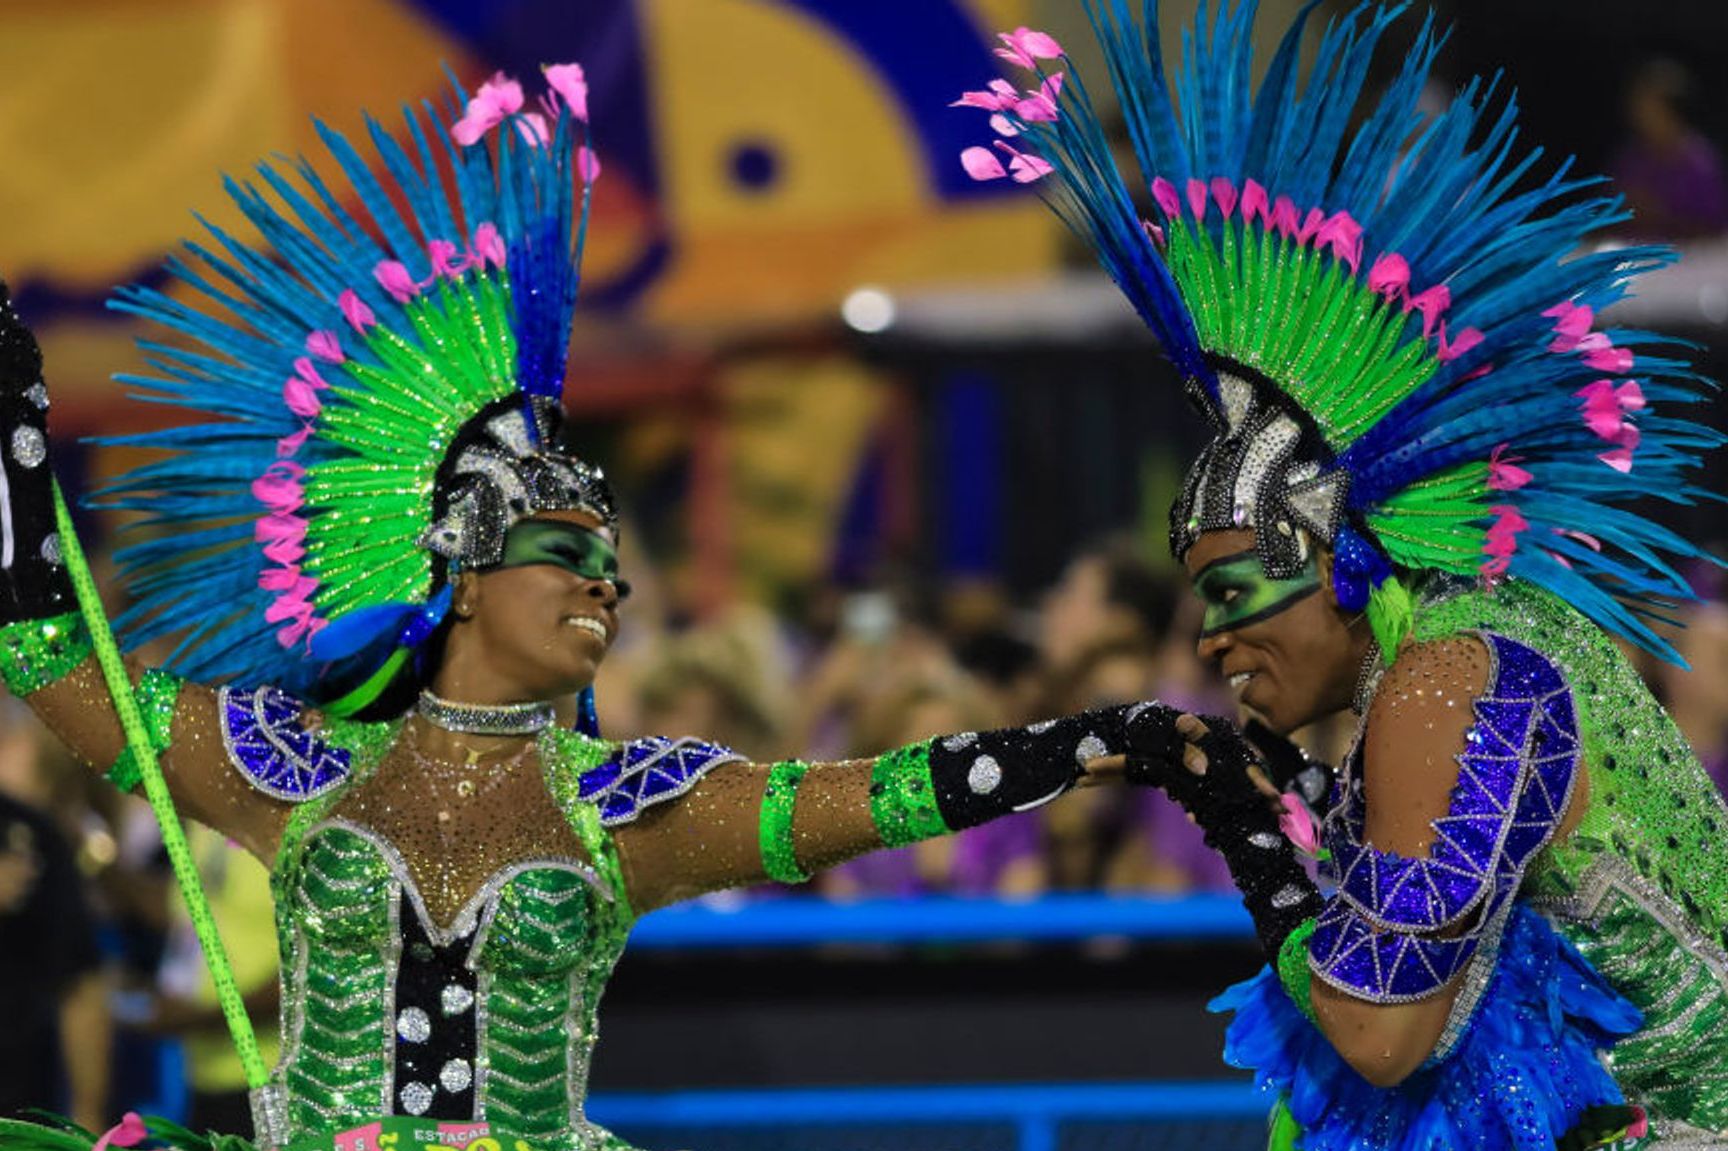 Опять из-за коронавируса: организаторы карнавала в Рио-де-Жанейро отменили его проведение в феврале 2021 года